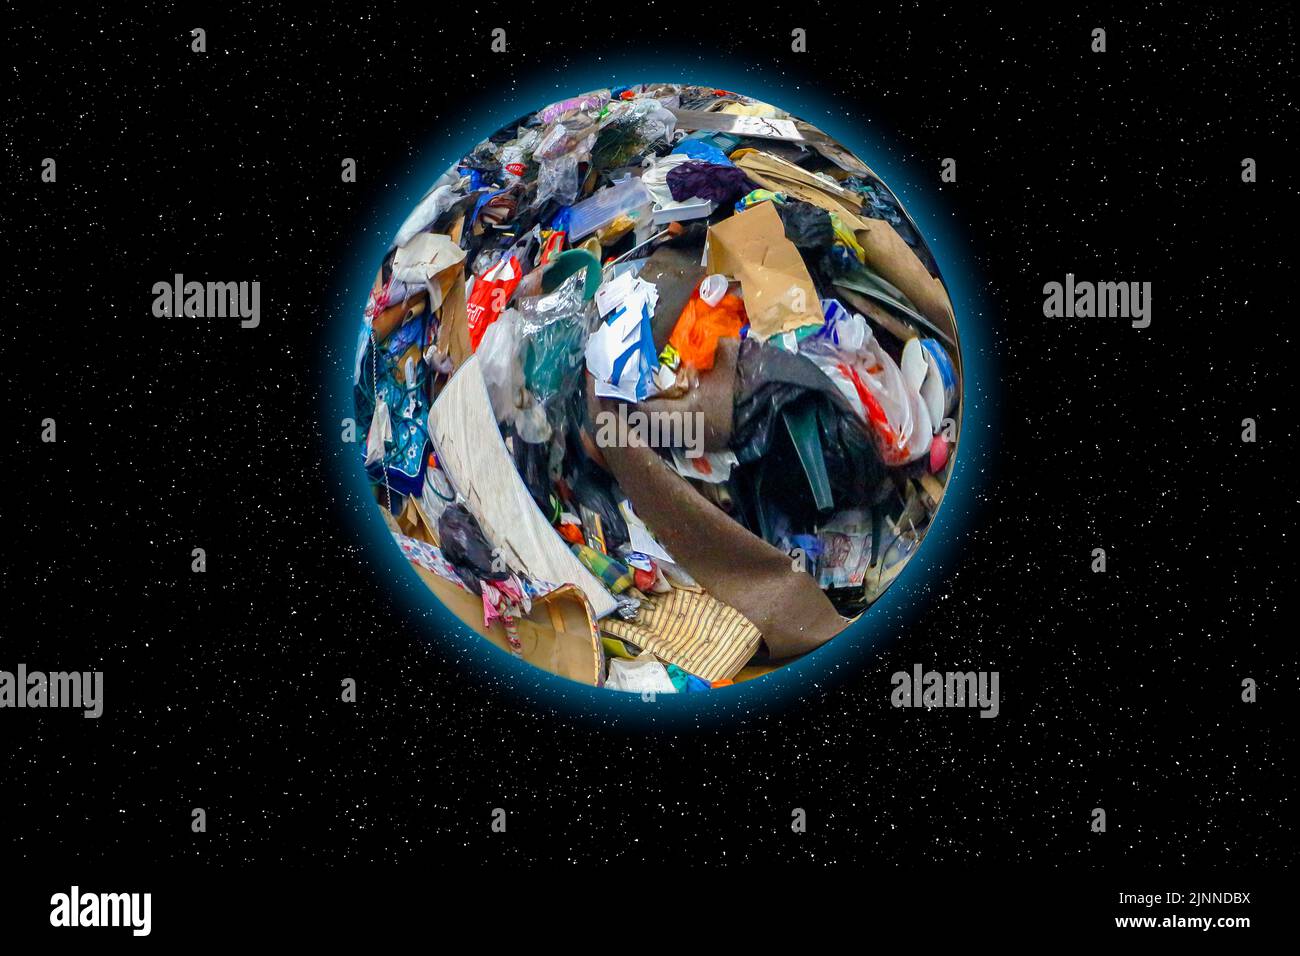 Imagen compuesta que muestra la Tierra hecha de basura. Foto de stock